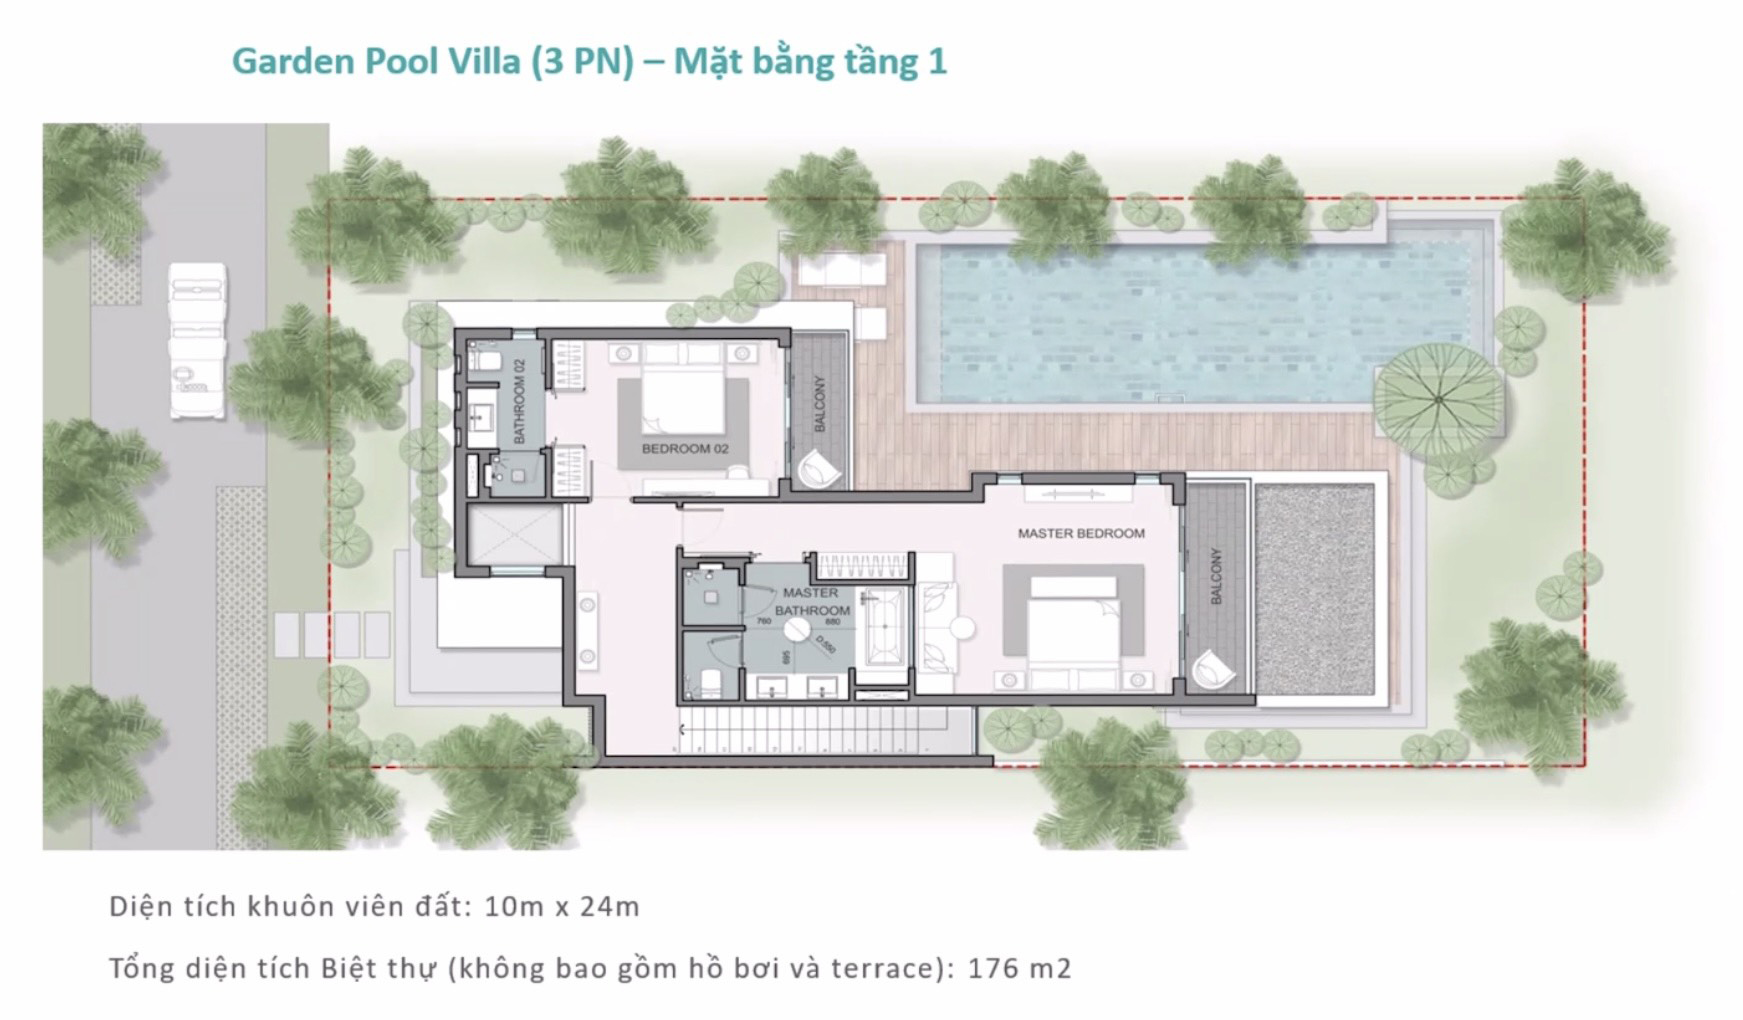 Garden pool villa - mat bang tang 1